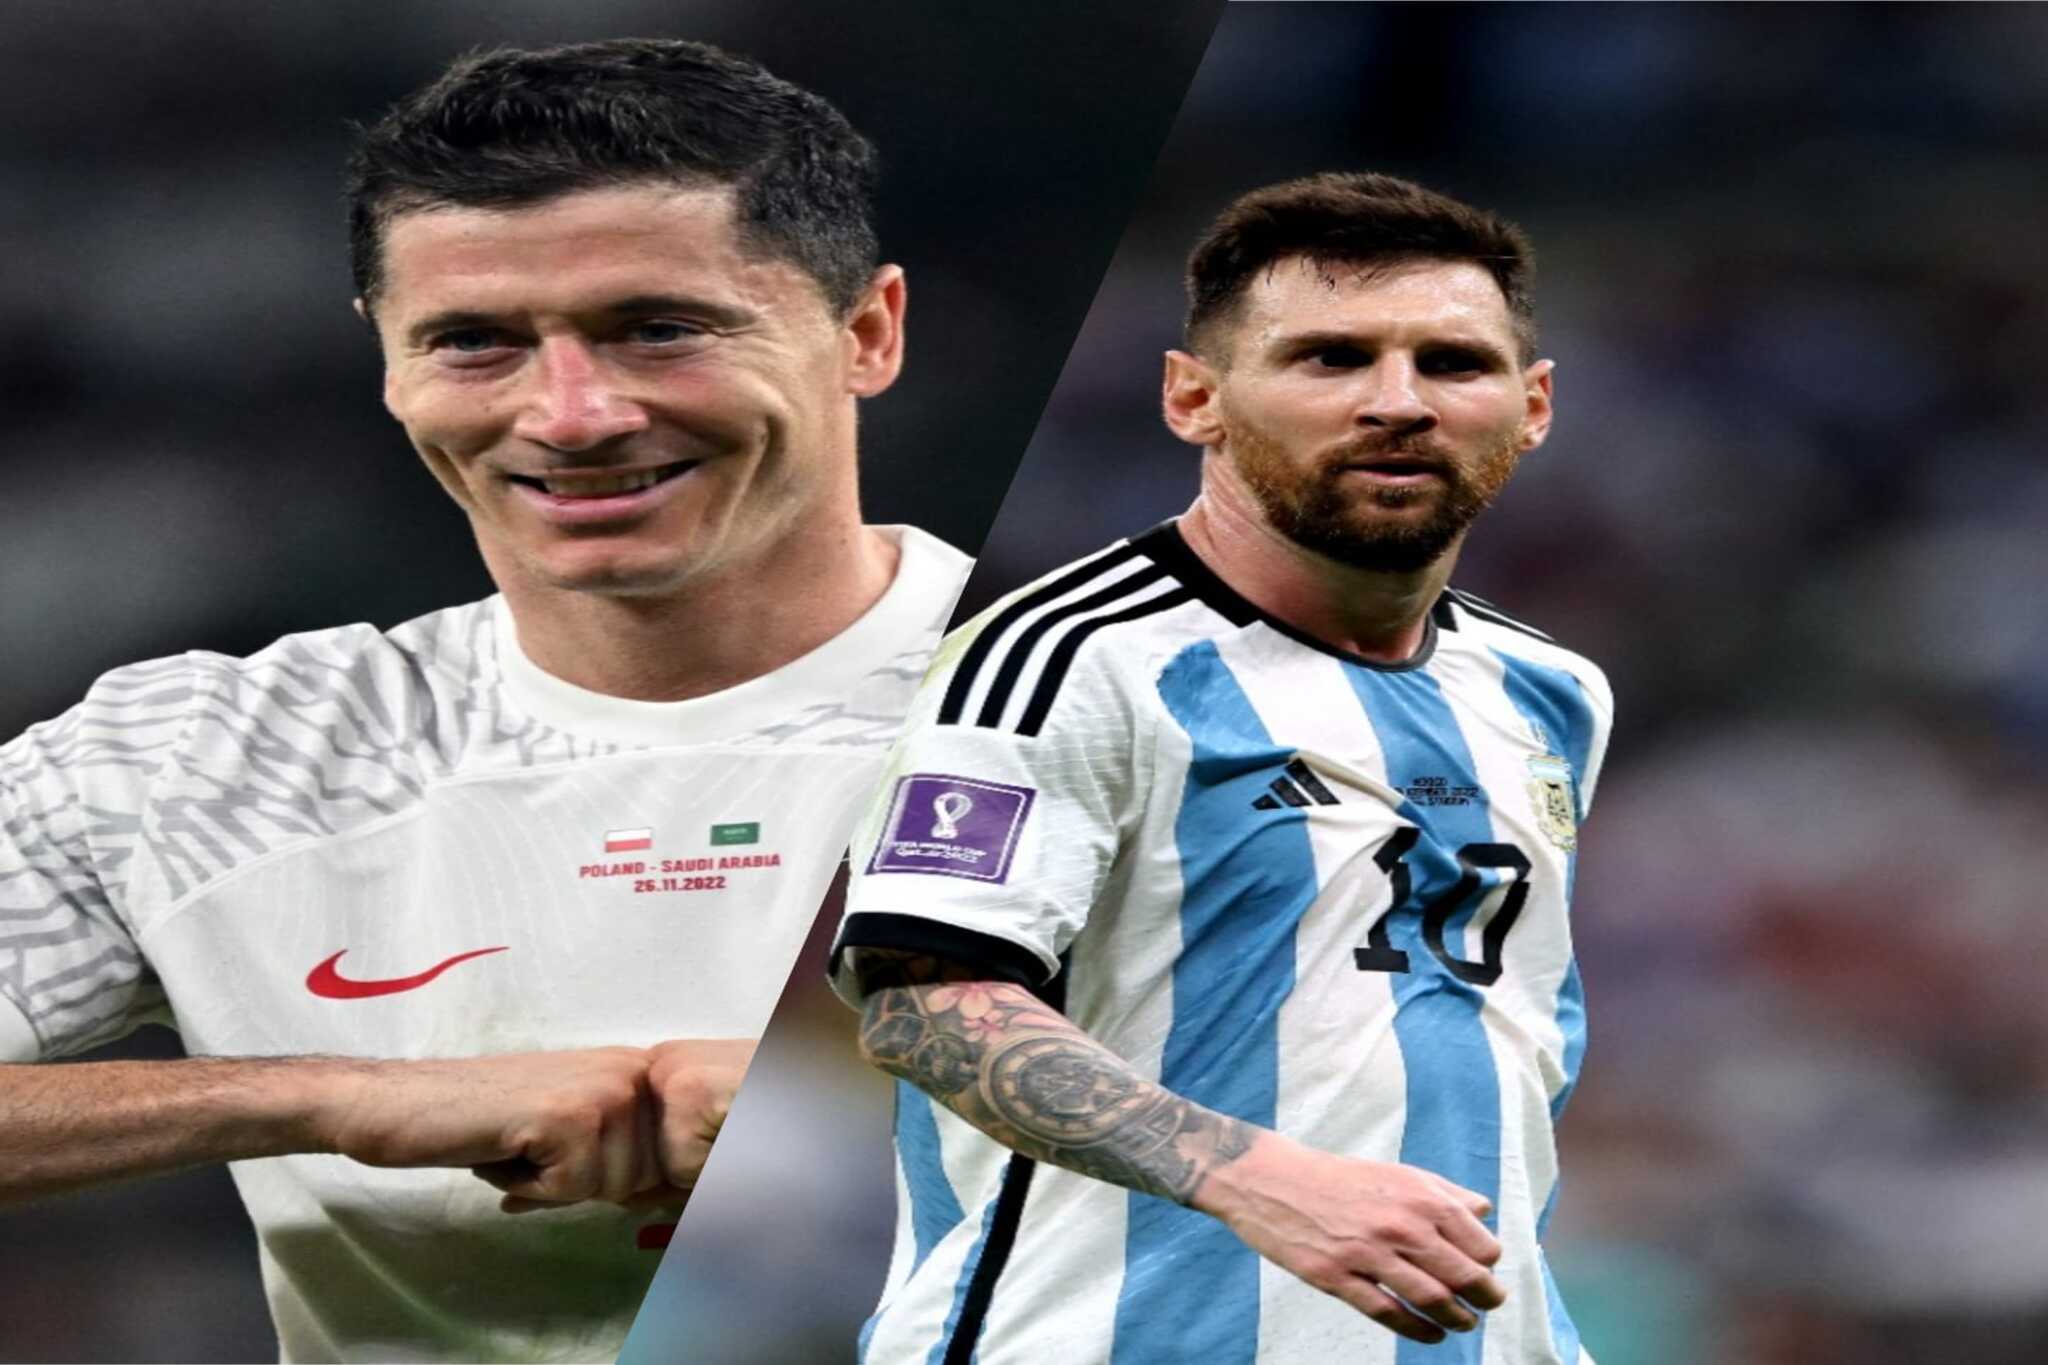 Argentina vence Polônia e se classifica para as oitavas da Copa em